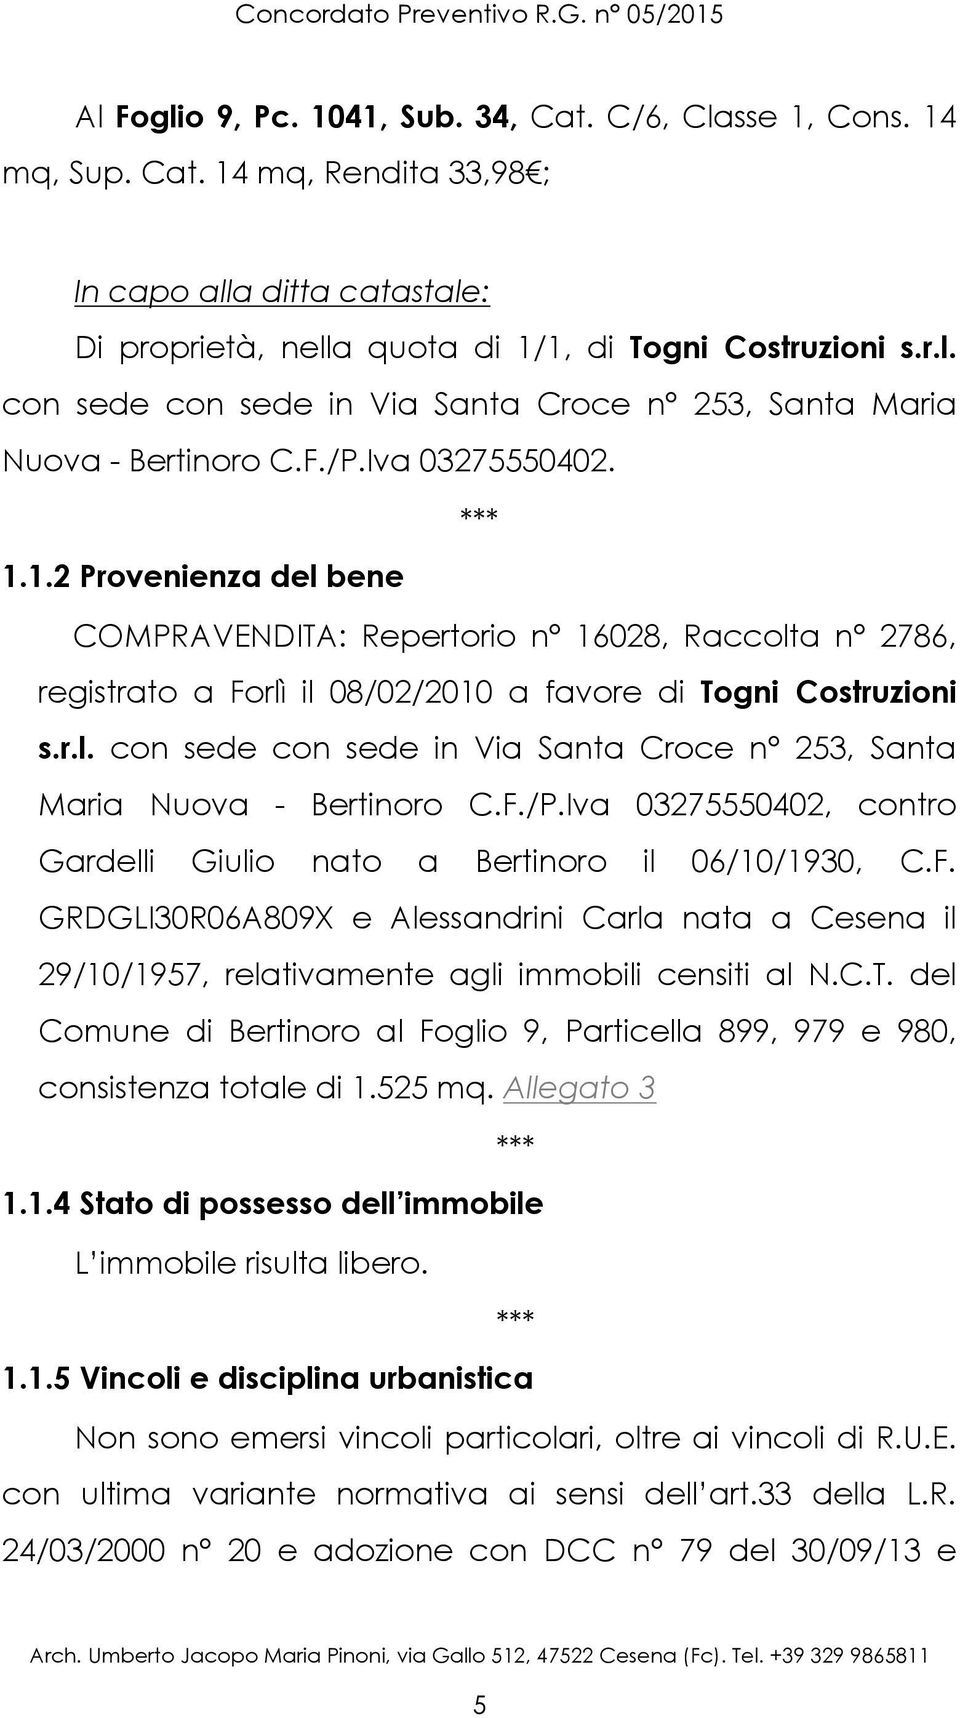 1.2 Provenienza del bene COMPRAVENDITA: Repertorio n 16028, Raccolta n 2786, registrato a Forlì il 08/02/2010 a favore di Togni Costruzioni s.r.l. con sede con sede in Via Santa Croce n 253, Santa Maria Nuova - Bertinoro C.